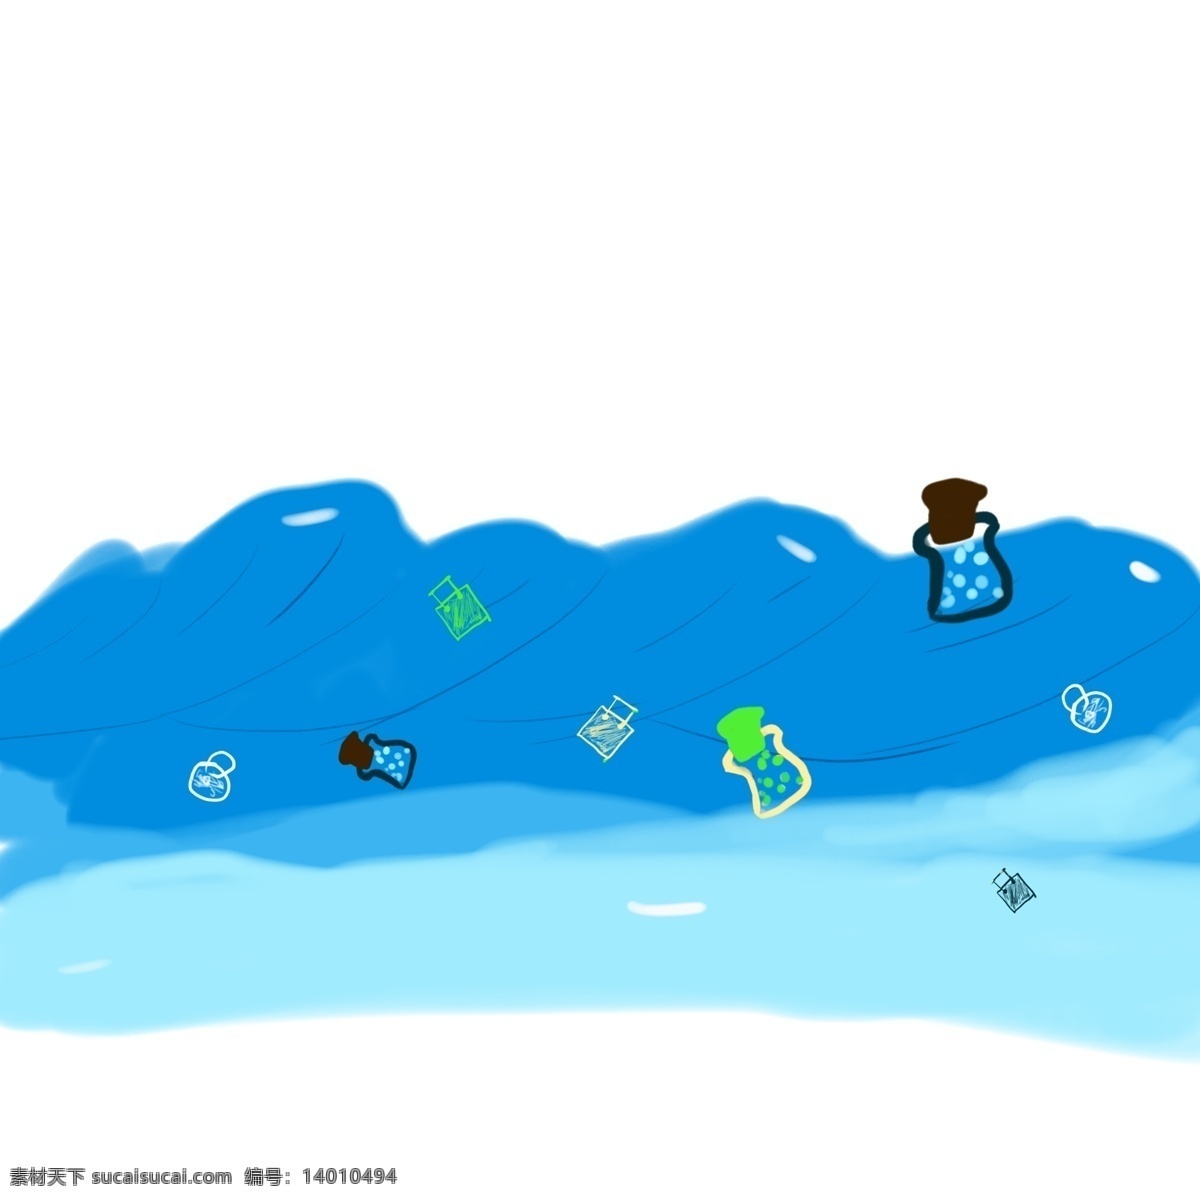 小 清新 蓝色 海洋 漂流 瓶 卡通 手绘 插画 小清新 小清晰 可爱的 蓝系色的海洋 漂流瓶 漂流物 卡通的 儿童